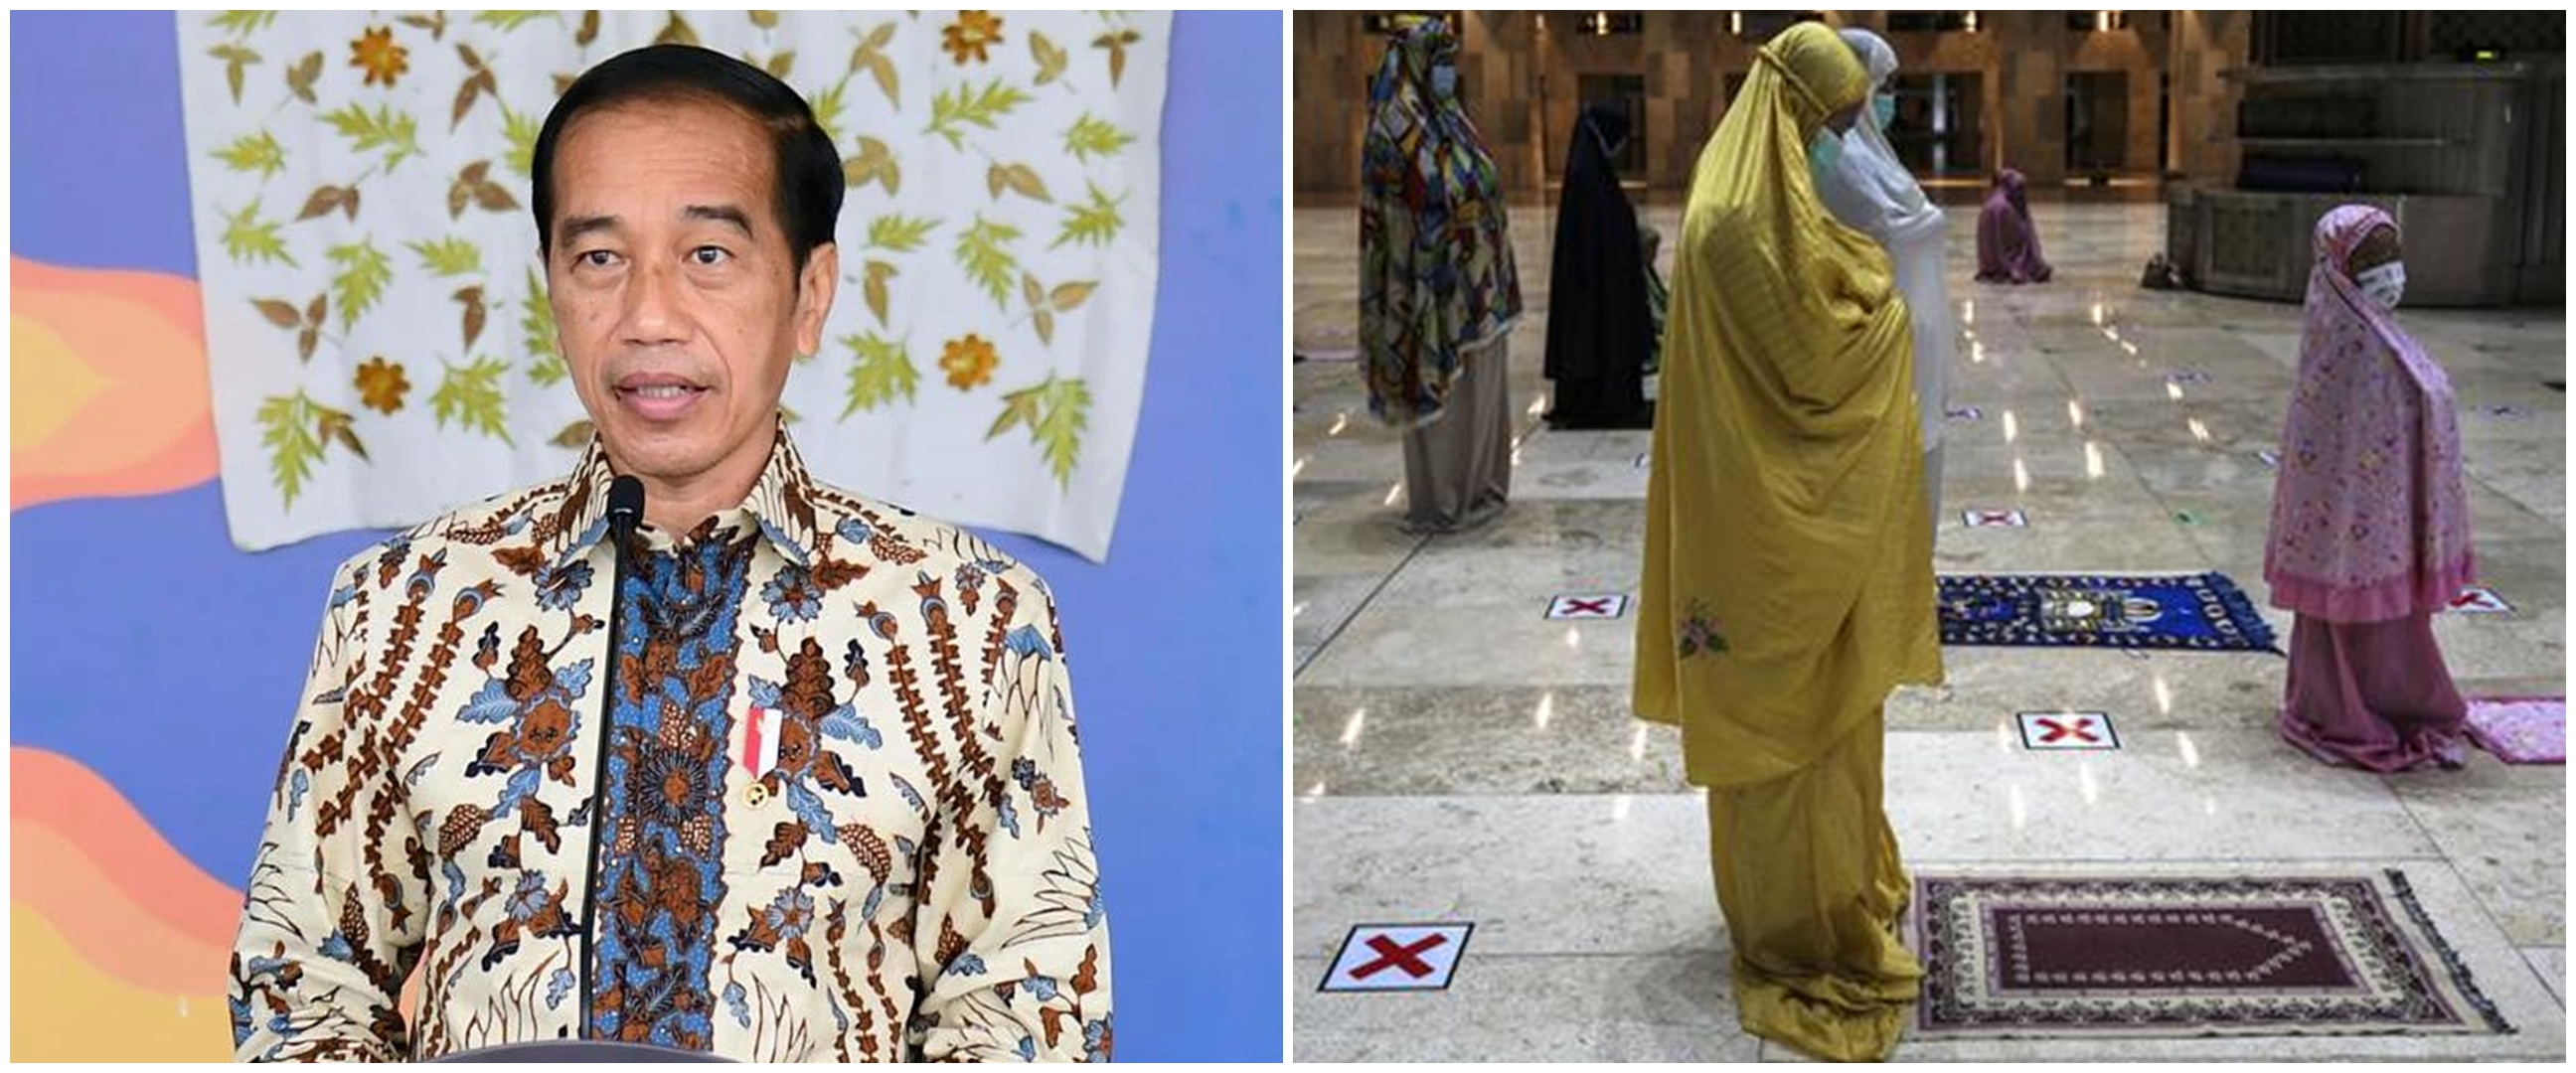 Jokowi perbolehkan tarawih dan mudik, syarat vaksin 2 kali dan booster